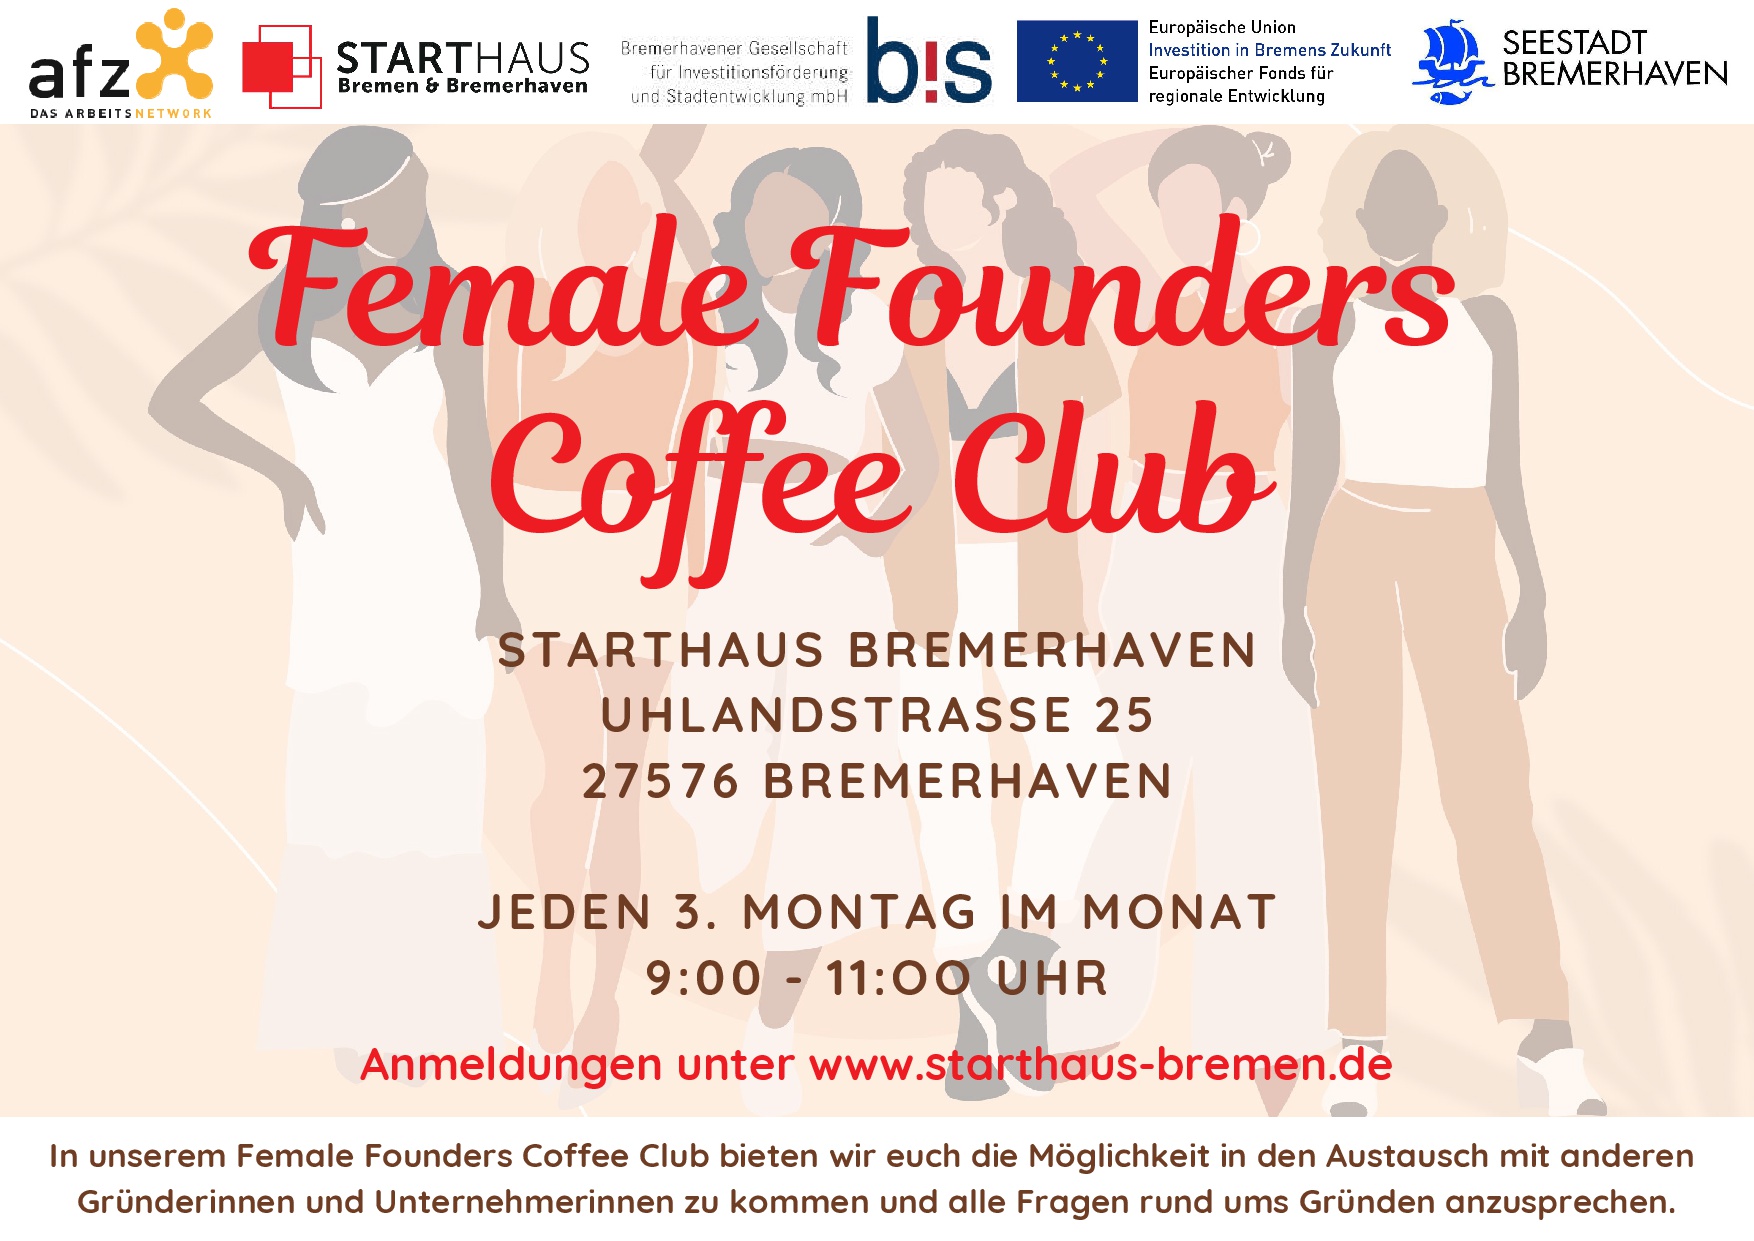 Bild mit 5 Frauen in einer Reihe und dem Ankündigungstext "Female Founders Coffee Club"